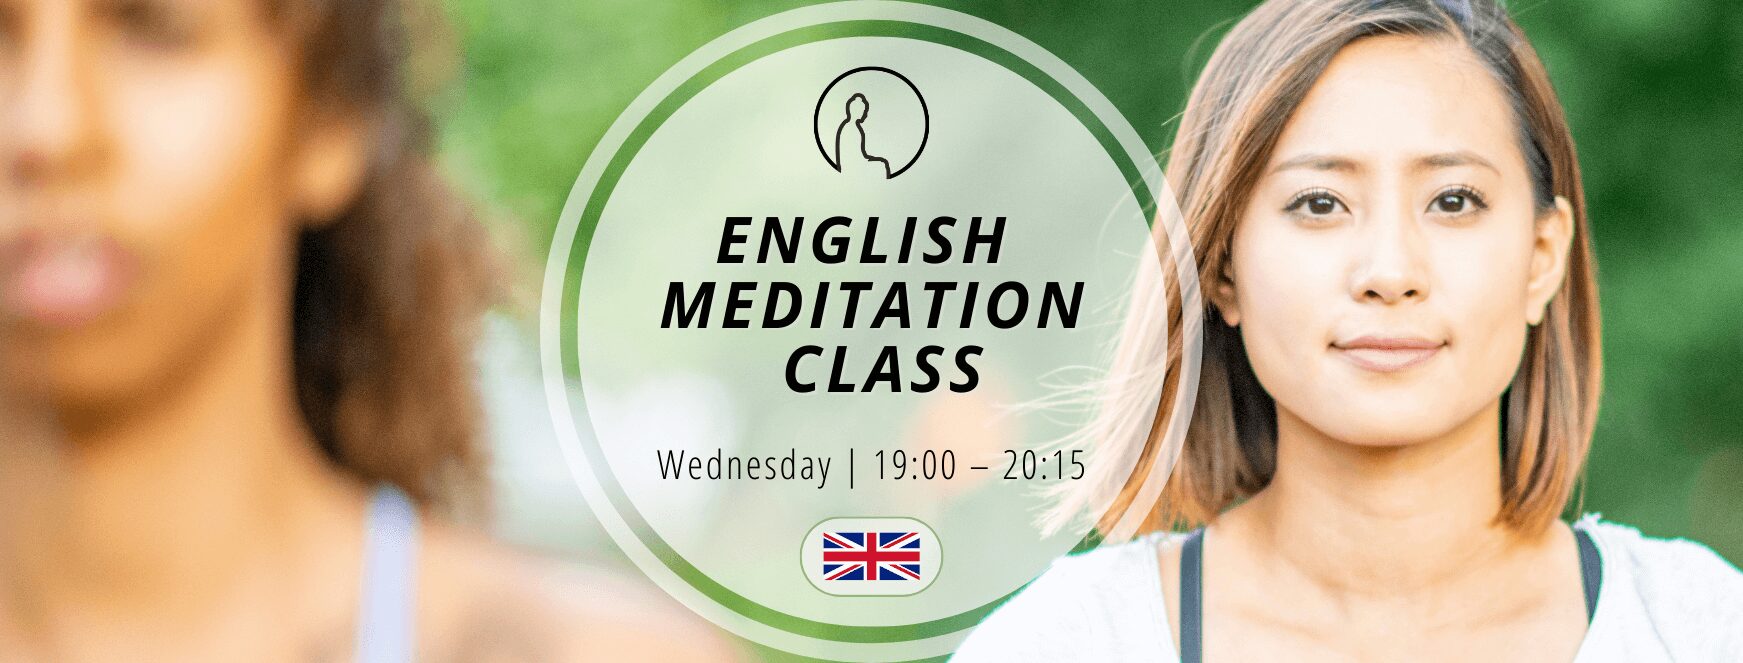 English Meditation